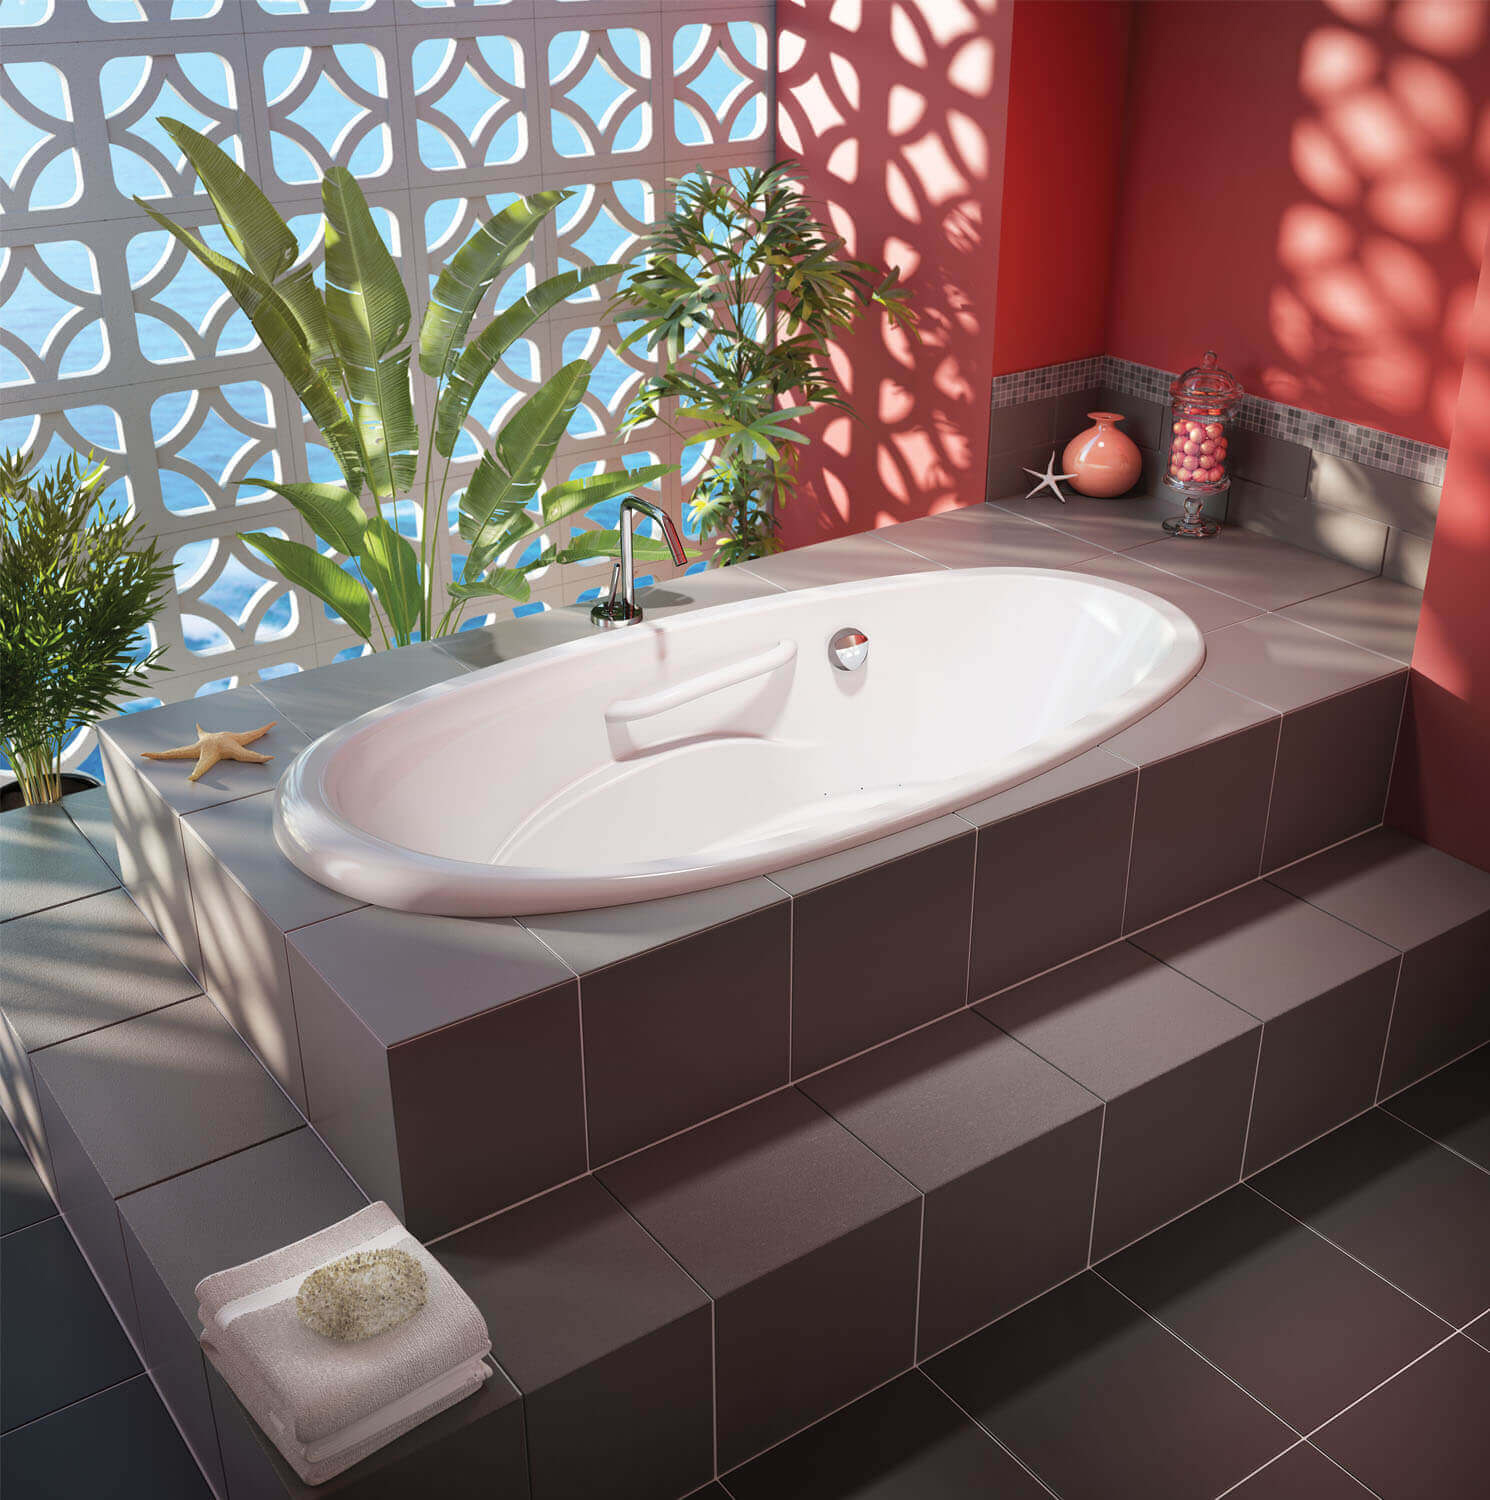 Essencia Oval 7236 air jet bathtub for your master bathroom